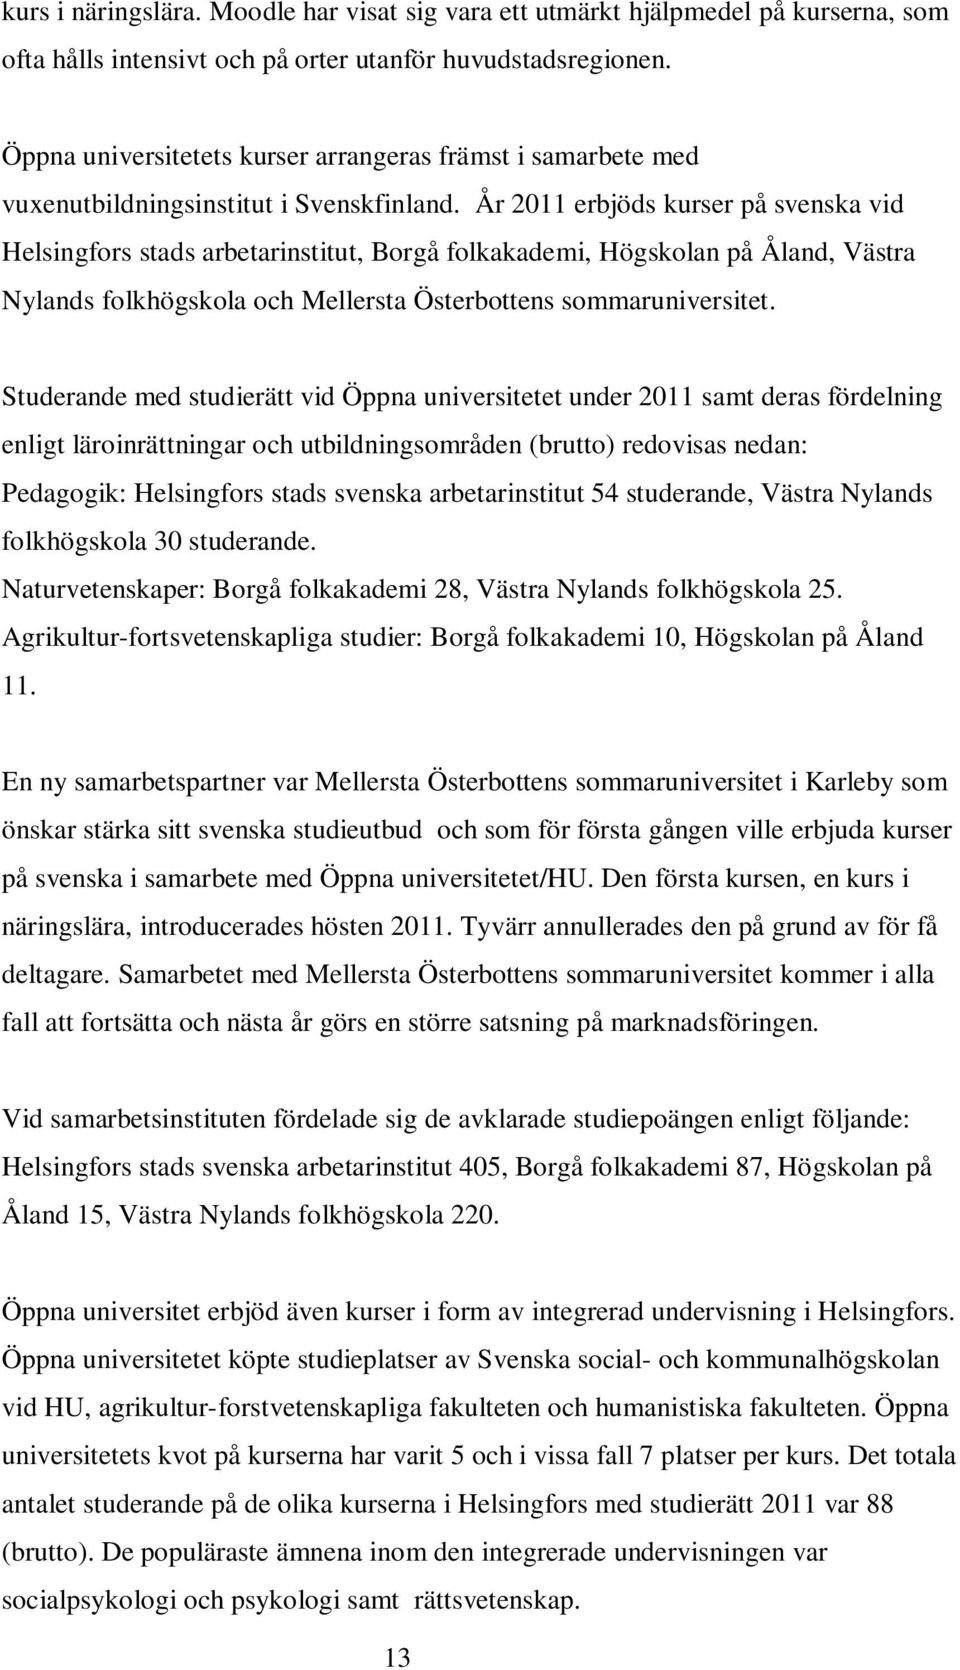 År 2011 erbjöds kurser på svenska vid Helsingfors stads arbetarinstitut, Borgå folkakademi, Högskolan på Åland, Västra Nylands folkhögskola och Mellersta Österbottens sommaruniversitet.